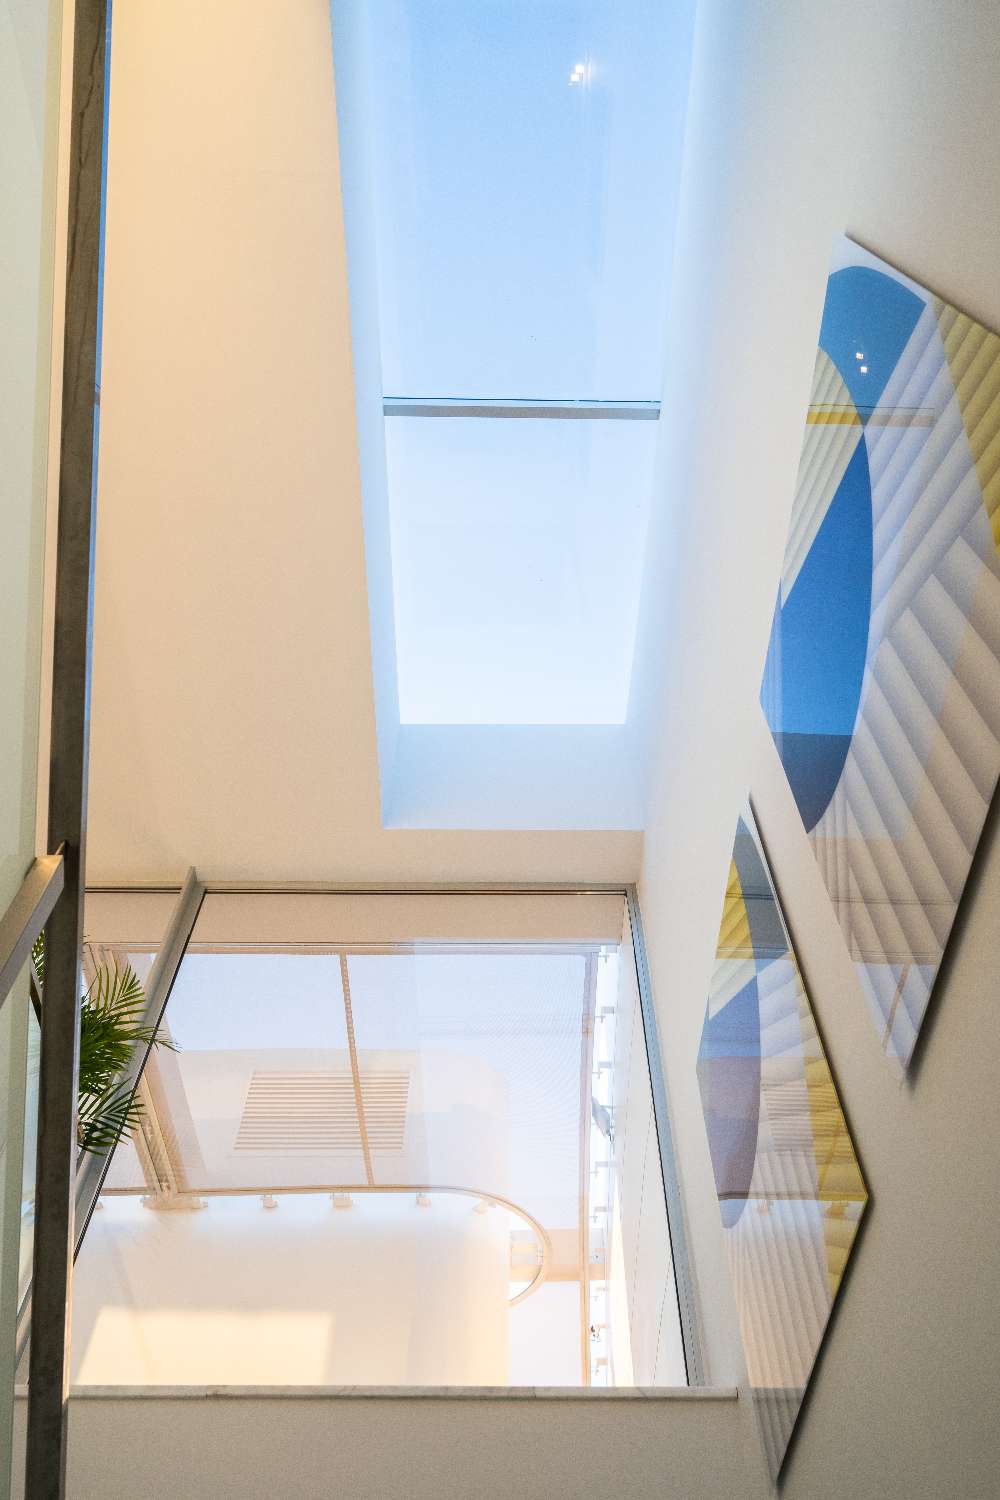 Favoloso attico duplex con 4 camere da letto con vista panoramica sul mare. Interior Design di Aalto incluso nel prezzo.